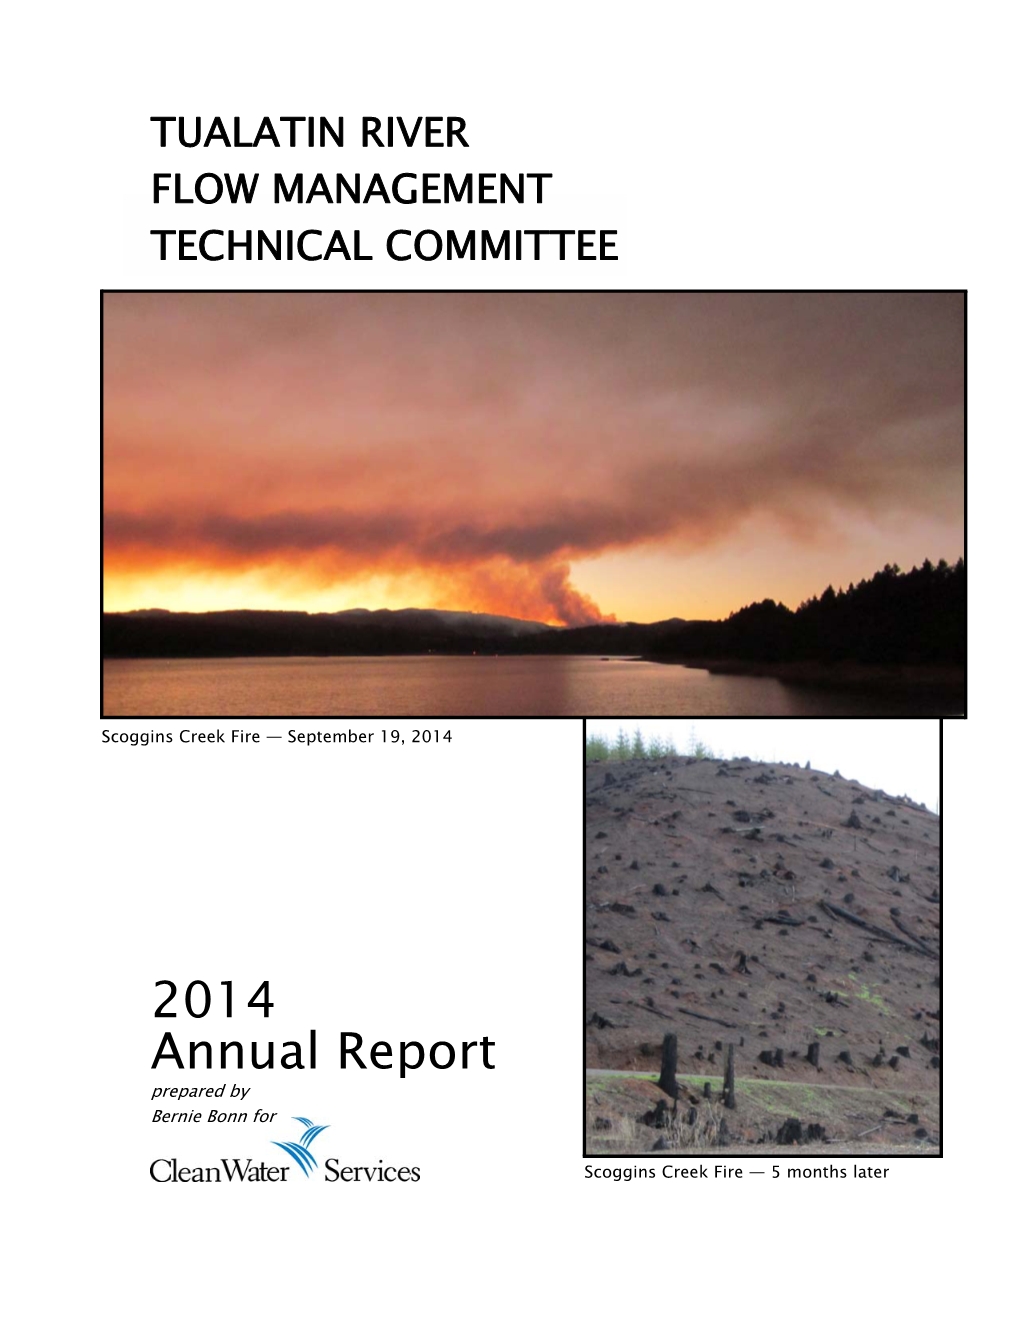 2014 Annual Report Prepared by Bernie Bonn For